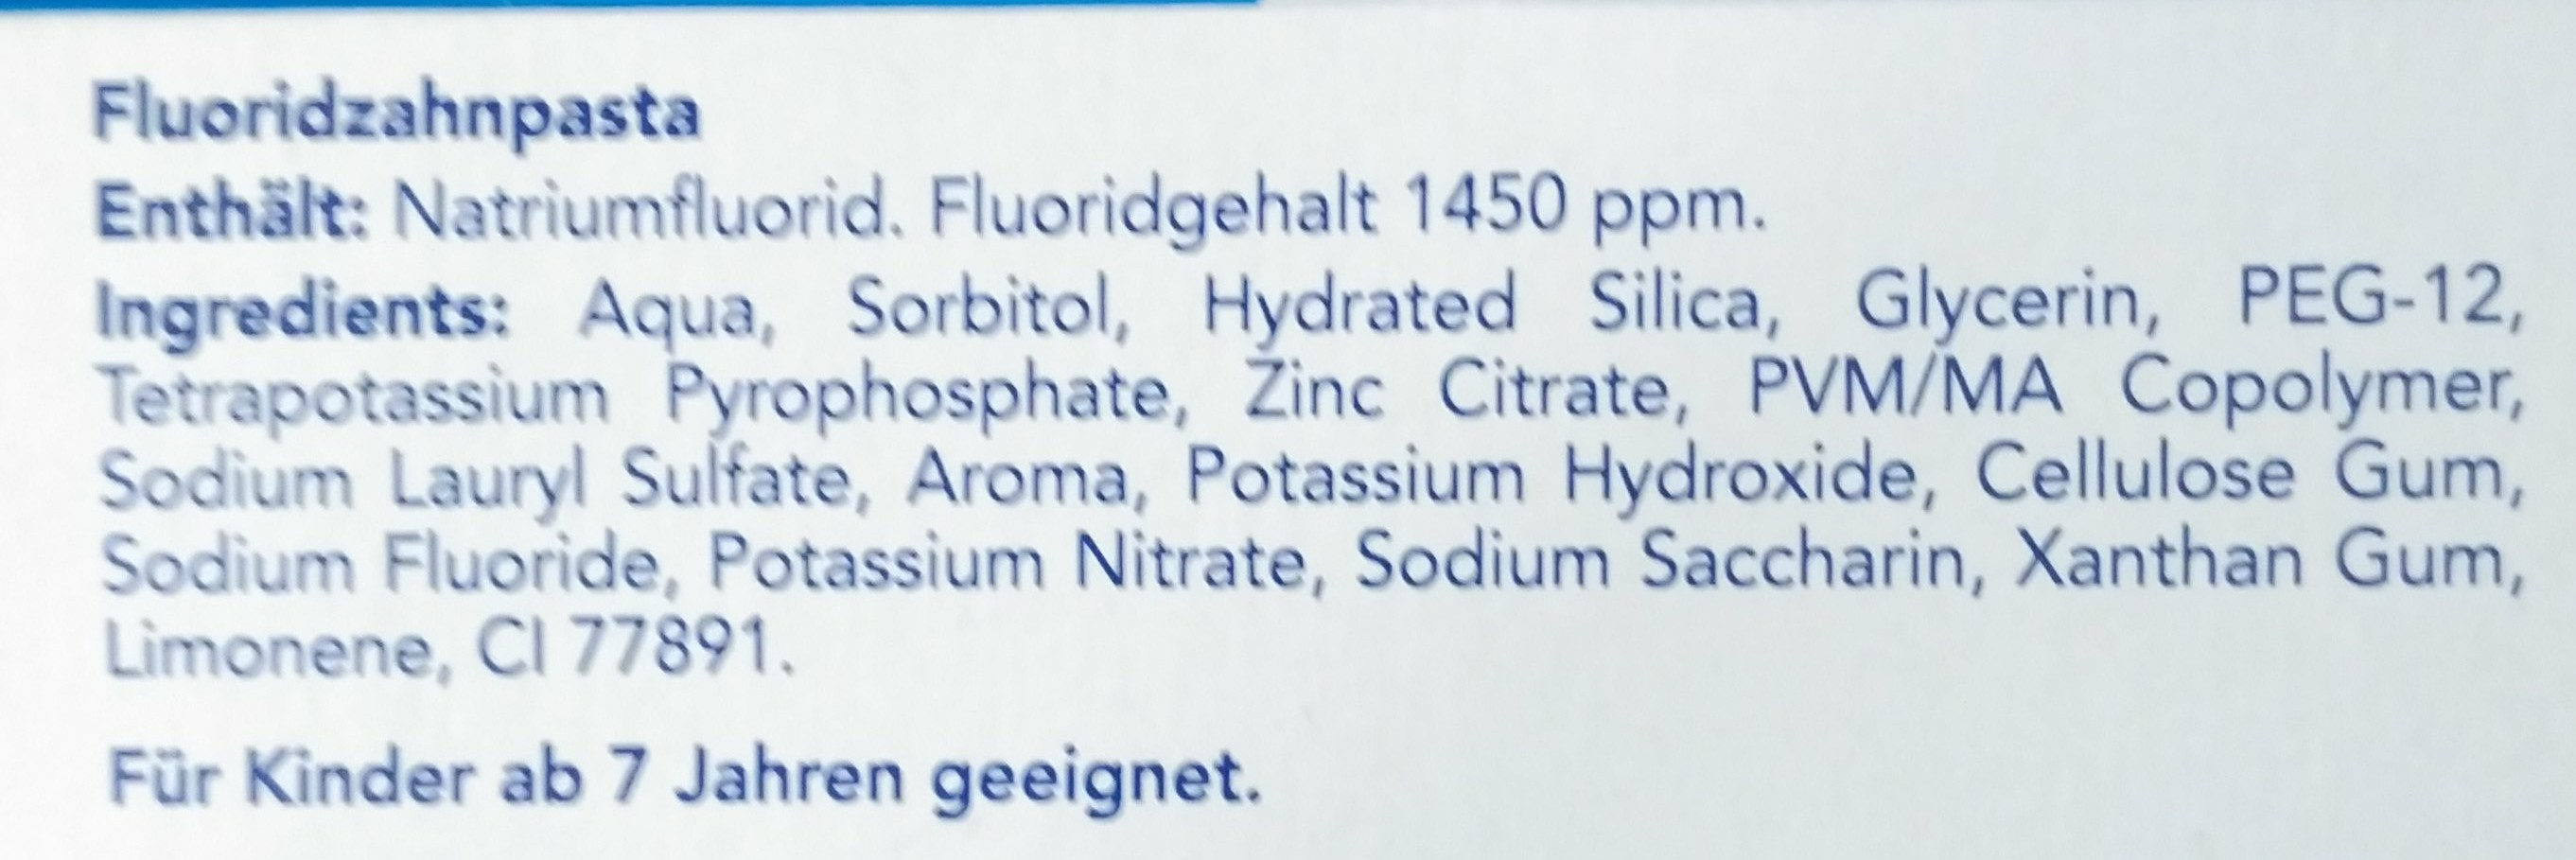 Fluoridzahnpasta - Ingredients - de